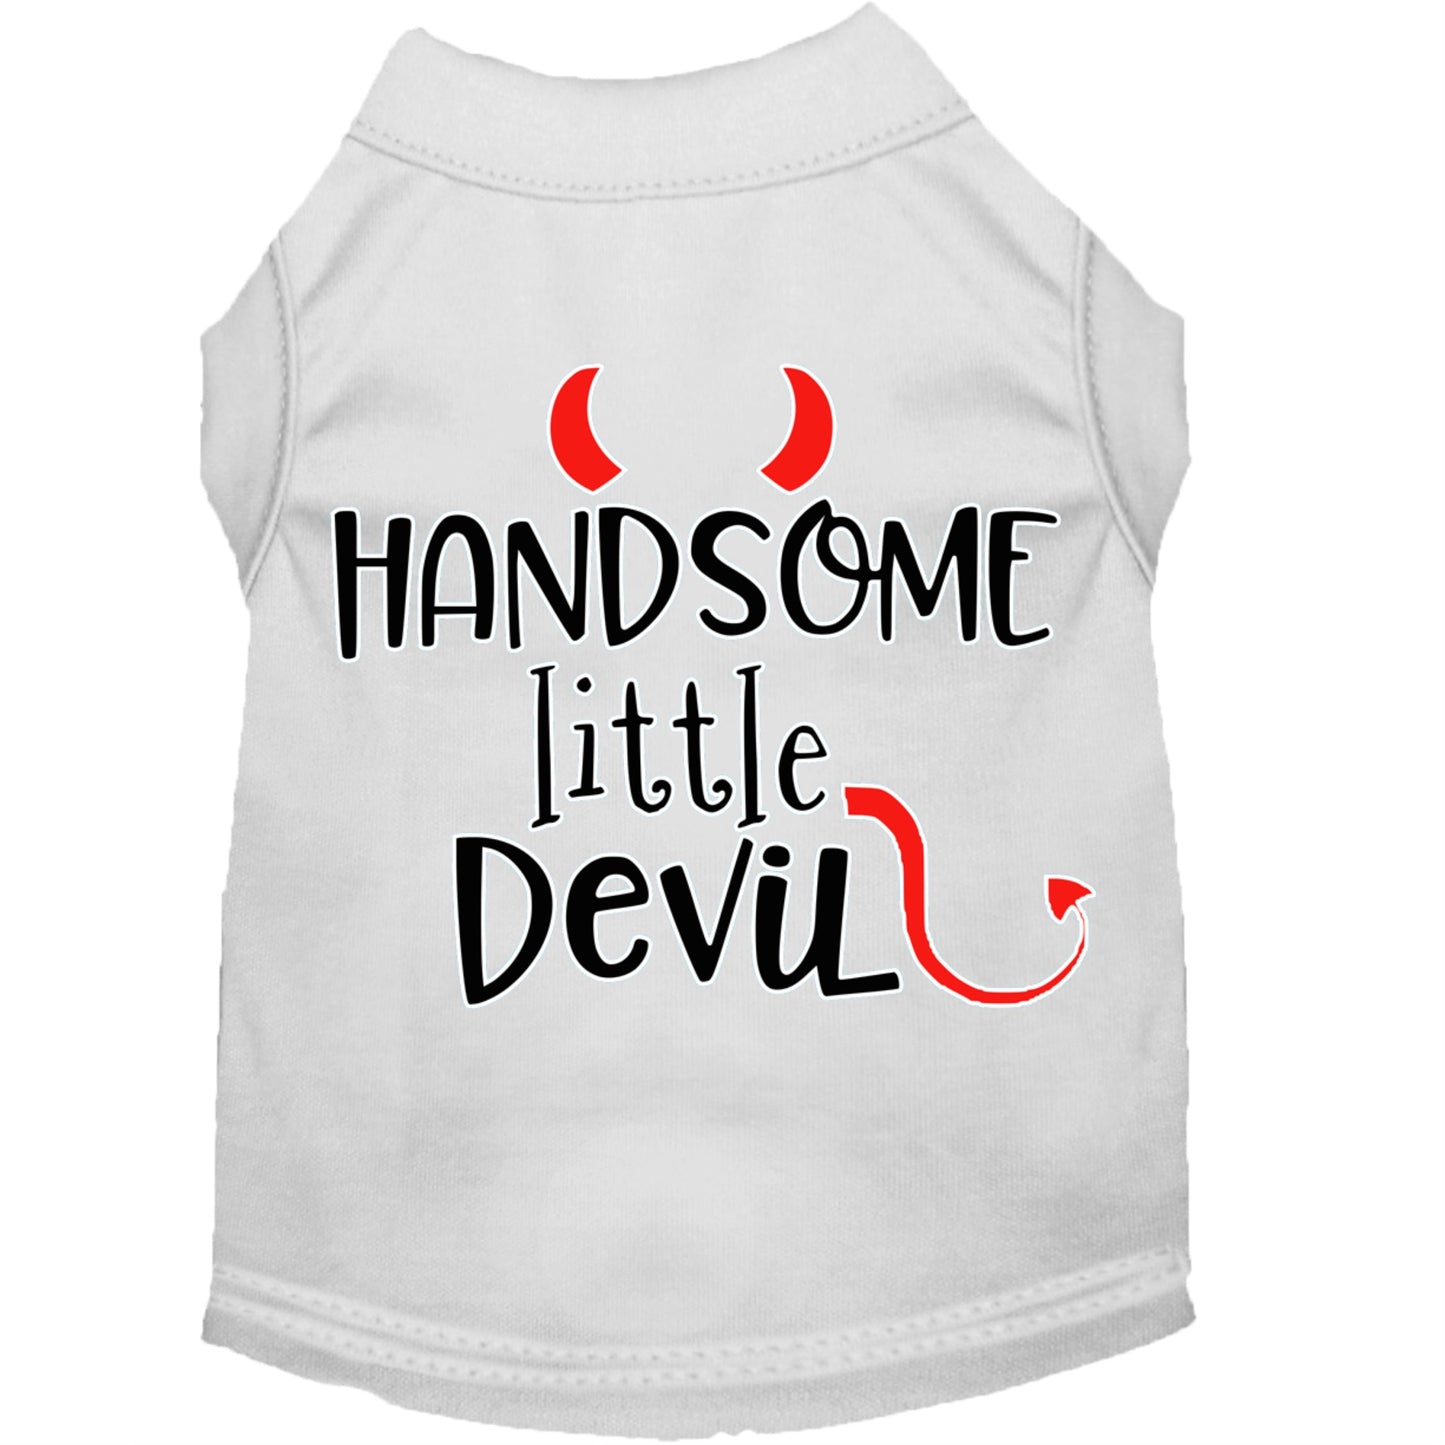 Handsome Little Devil Shirt - White